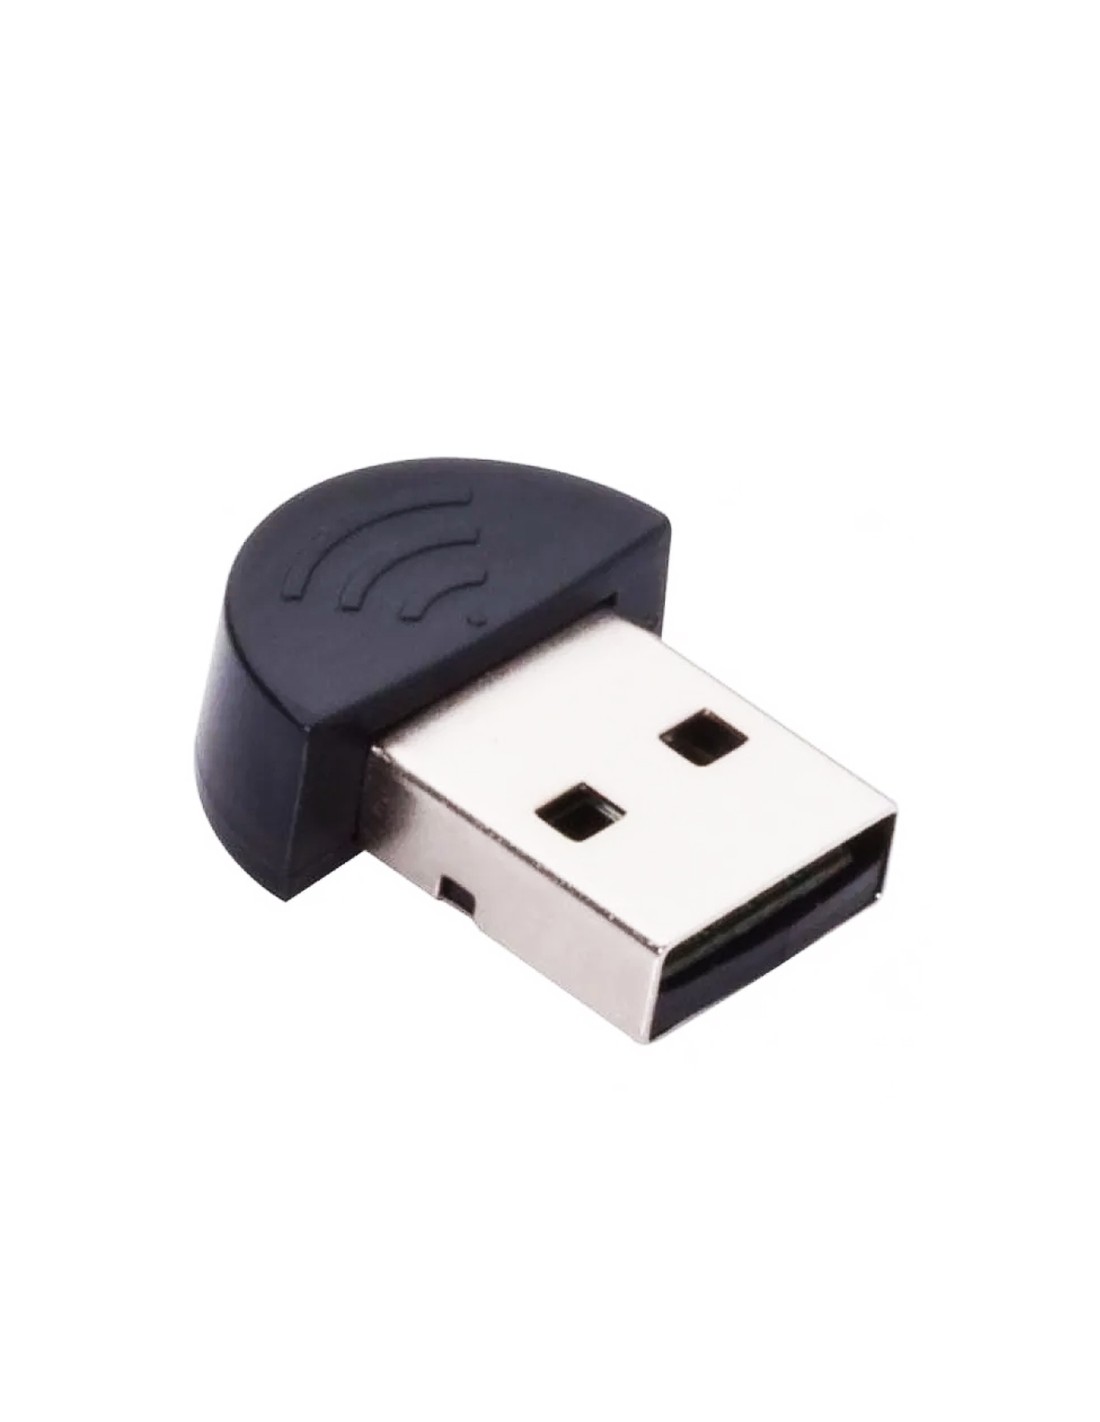 USB Receptor Adaptador Bluetooth